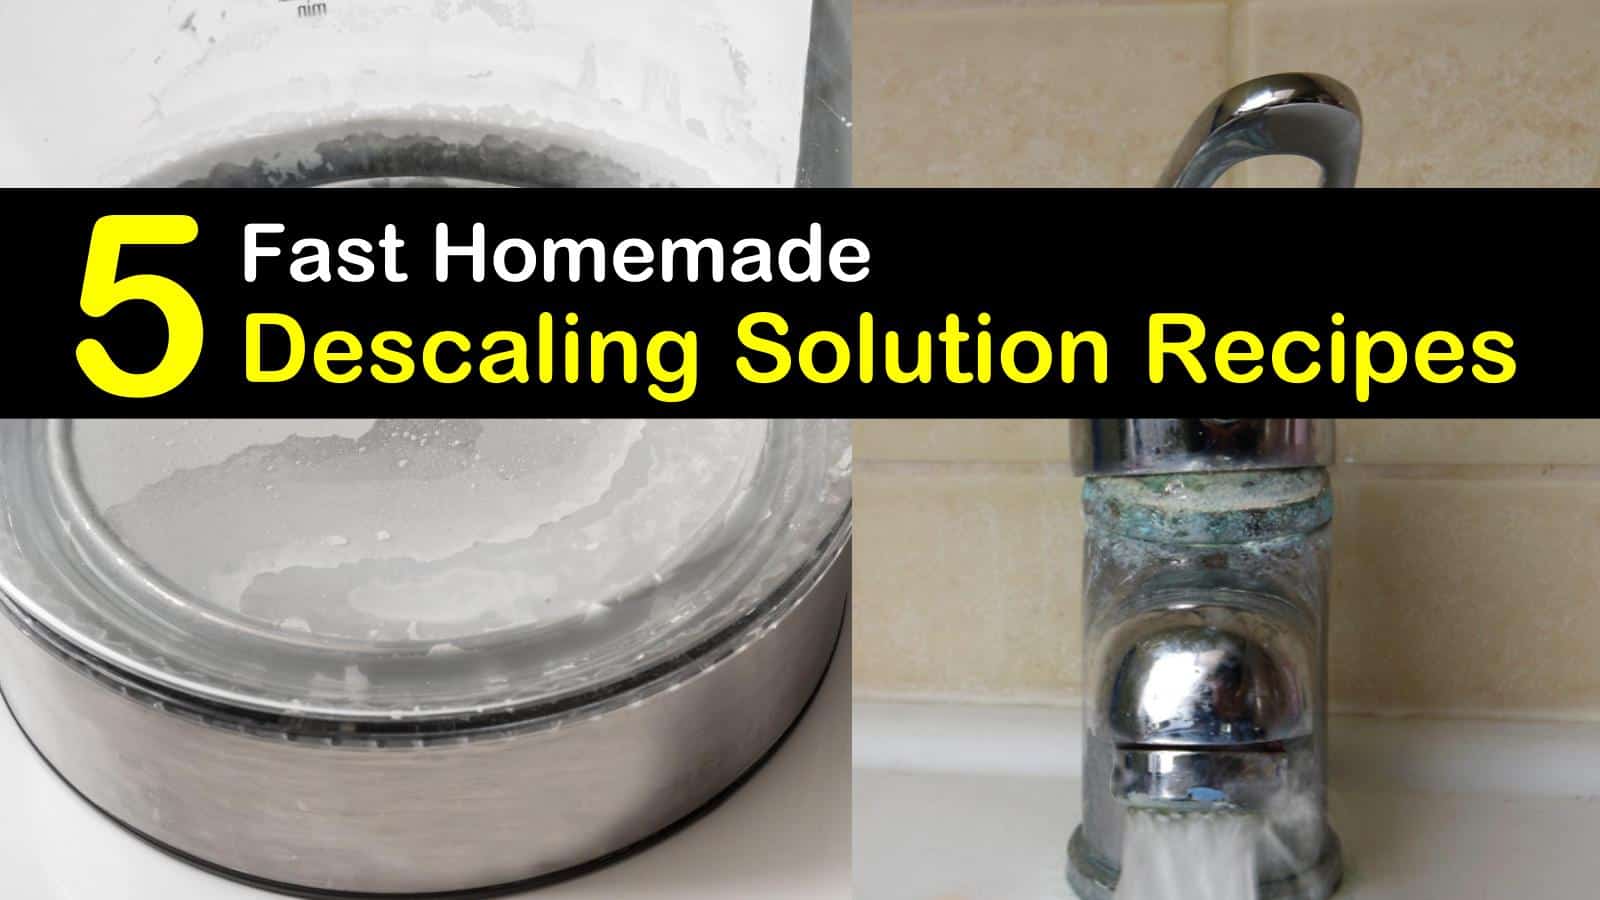 Homemade Descaling Solution Recipes: 5